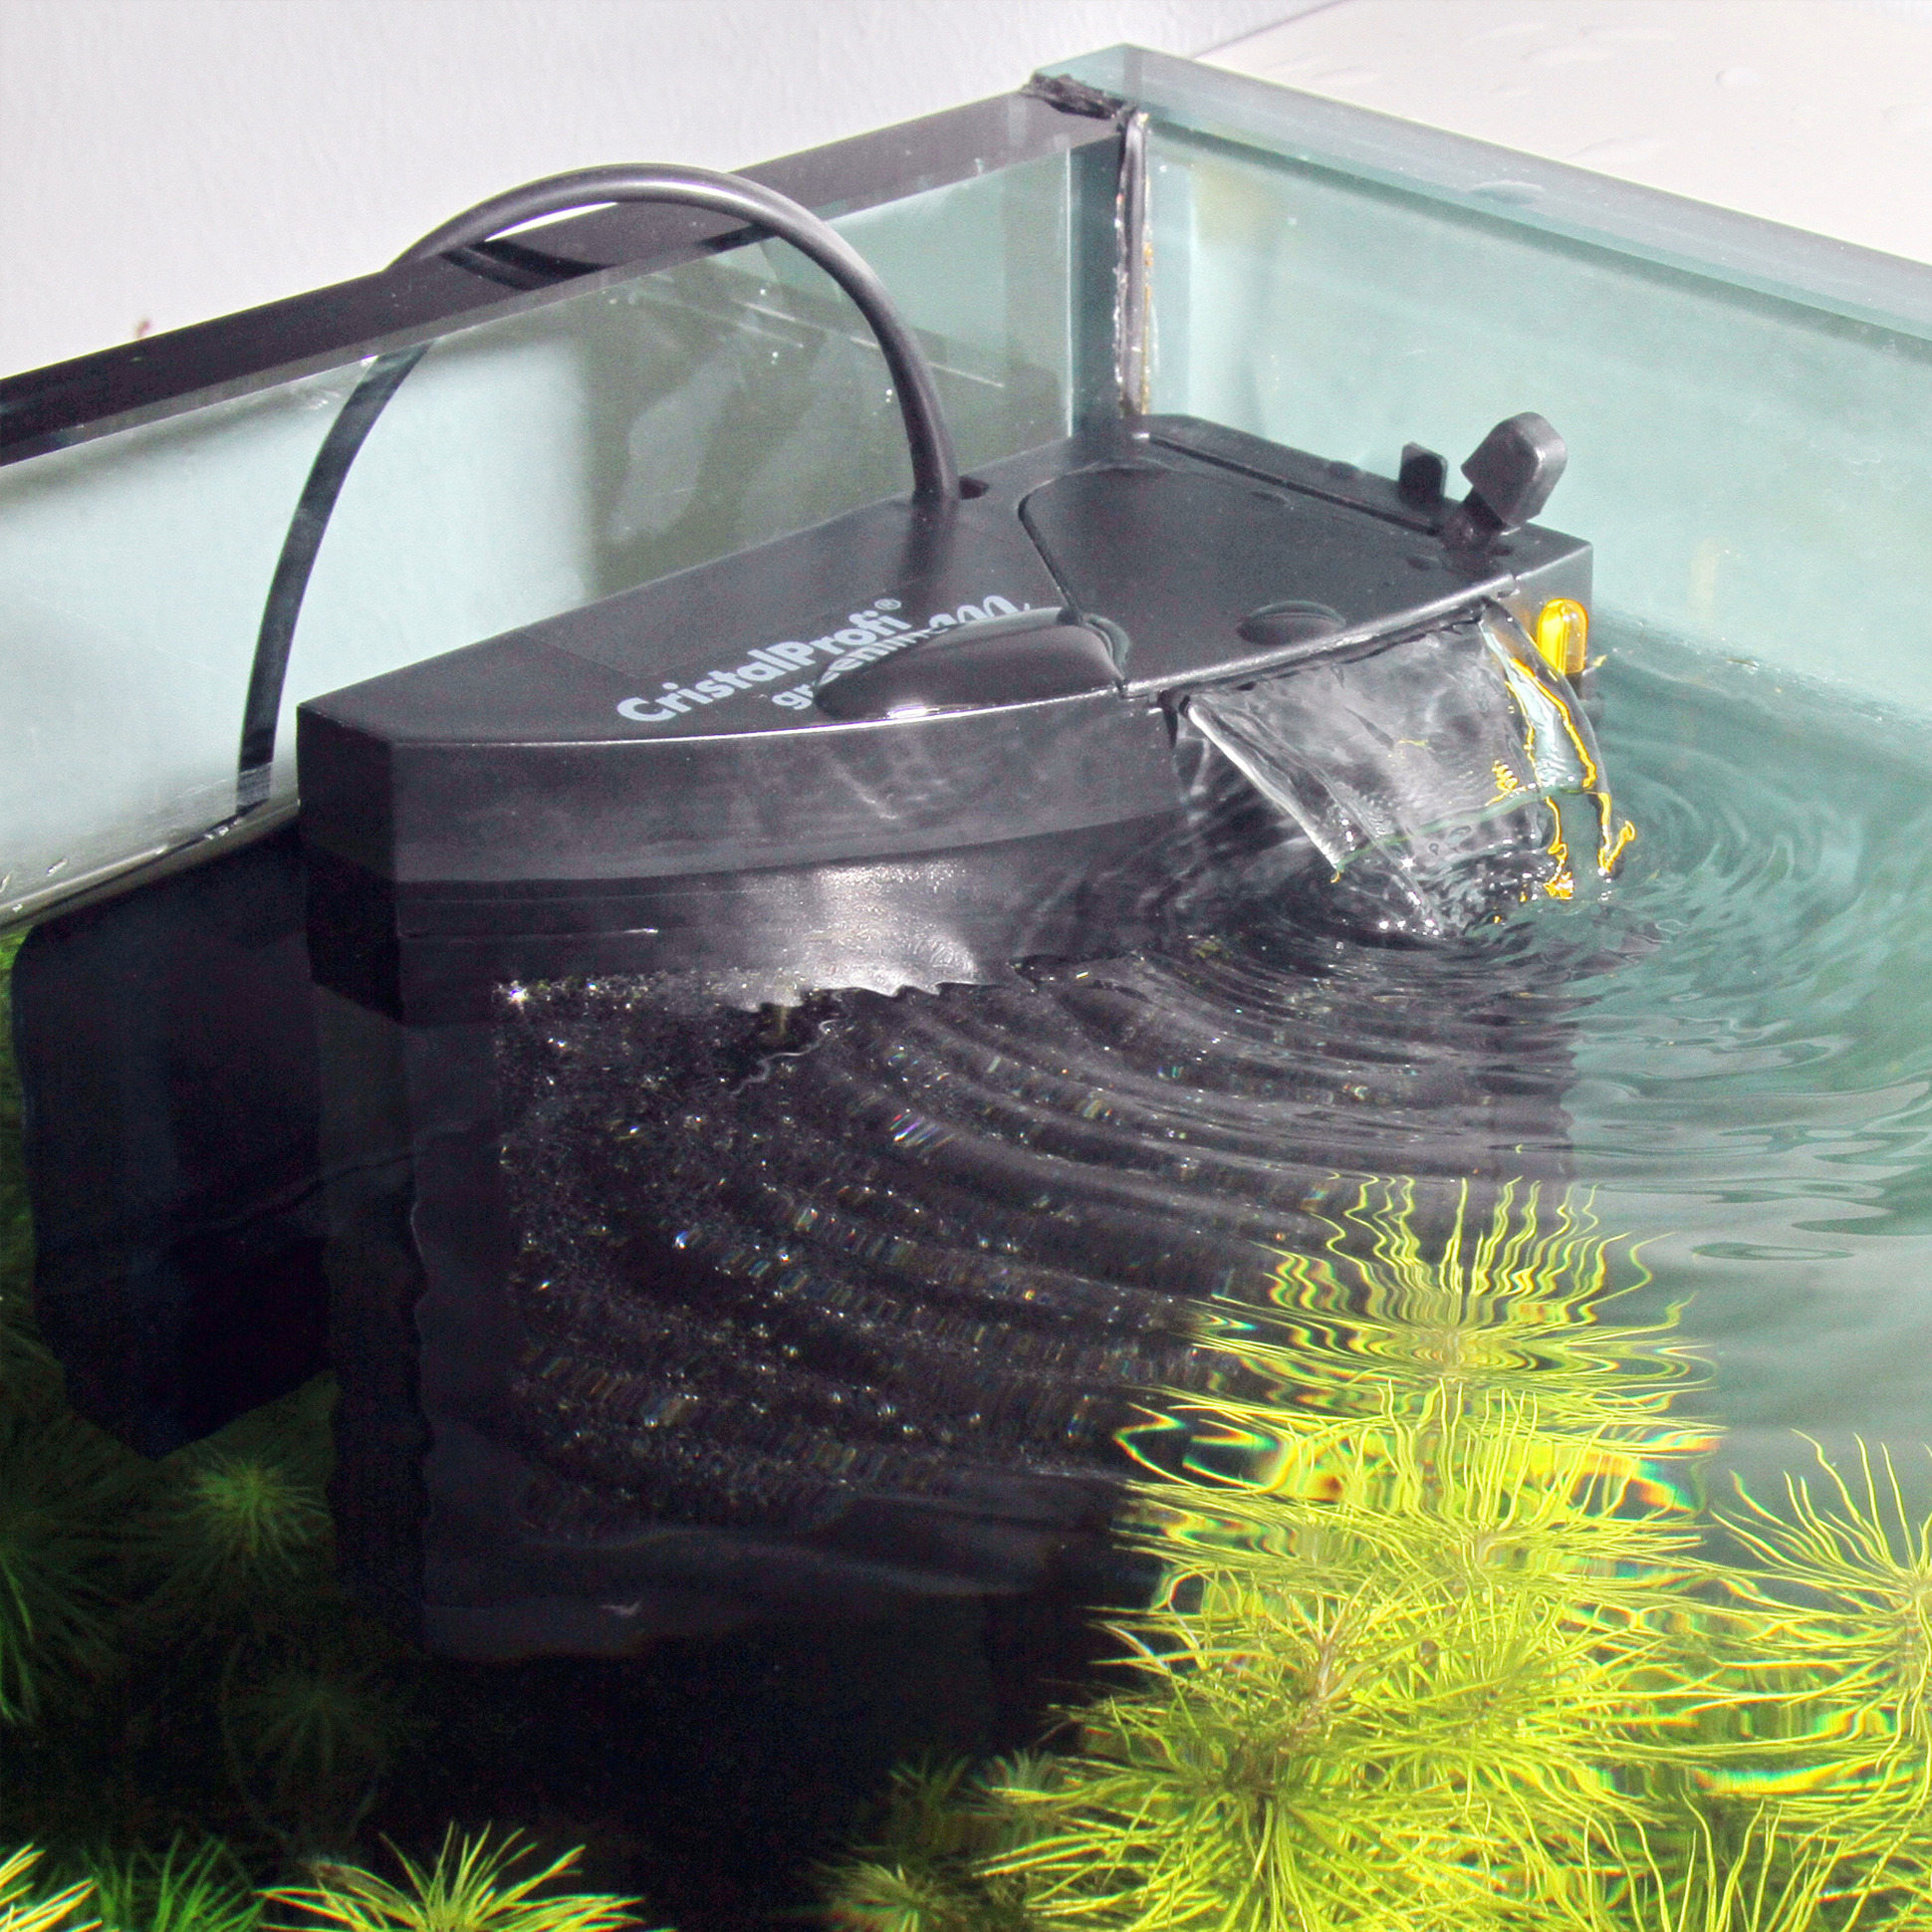 Aquarium filters and aquarium accessories